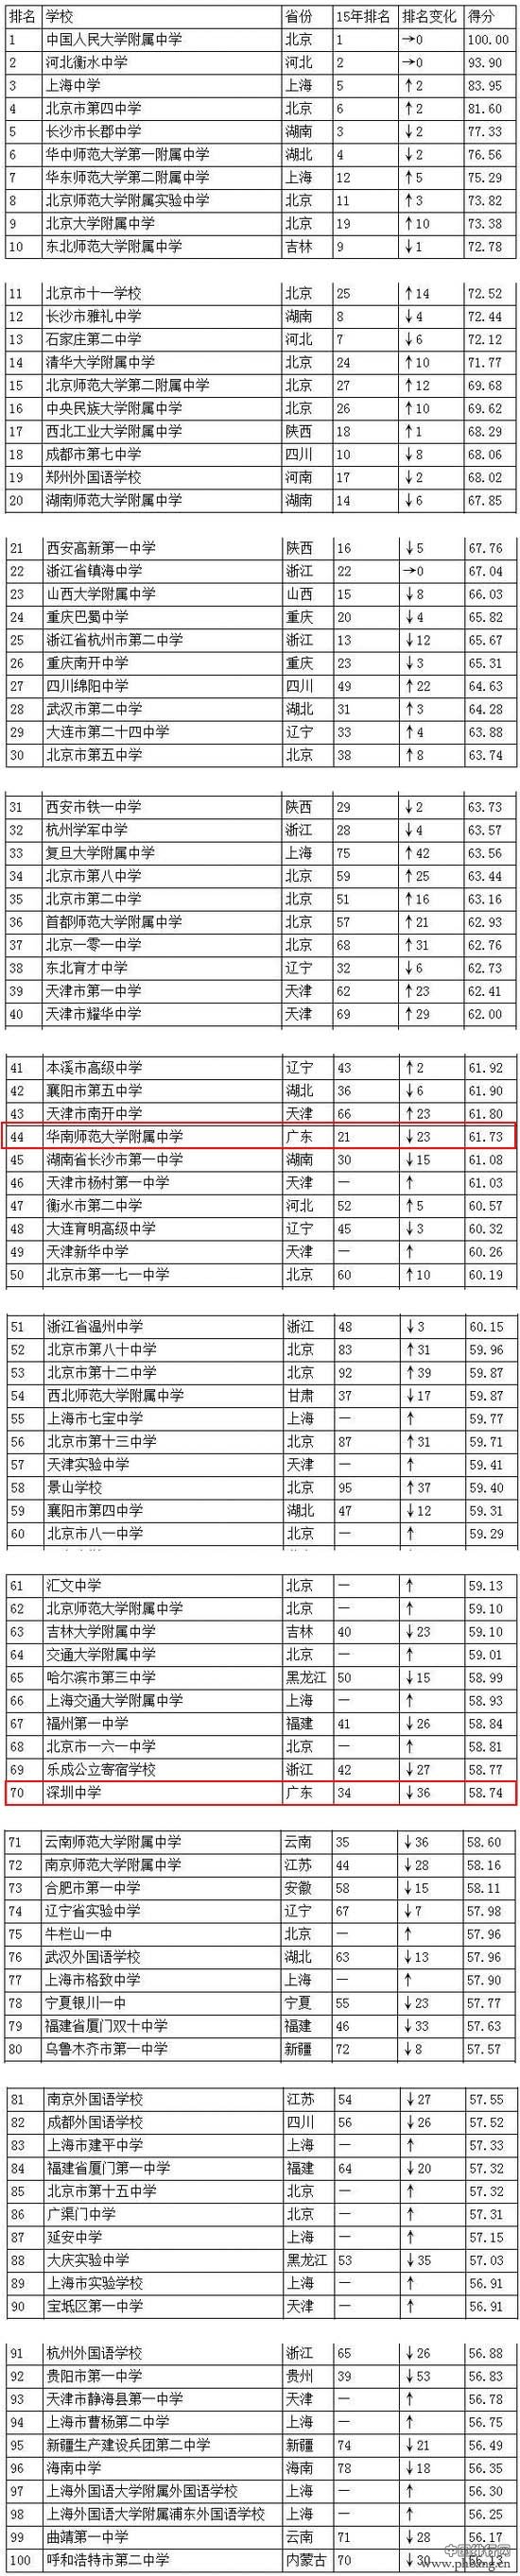 2016中国高中排行榜